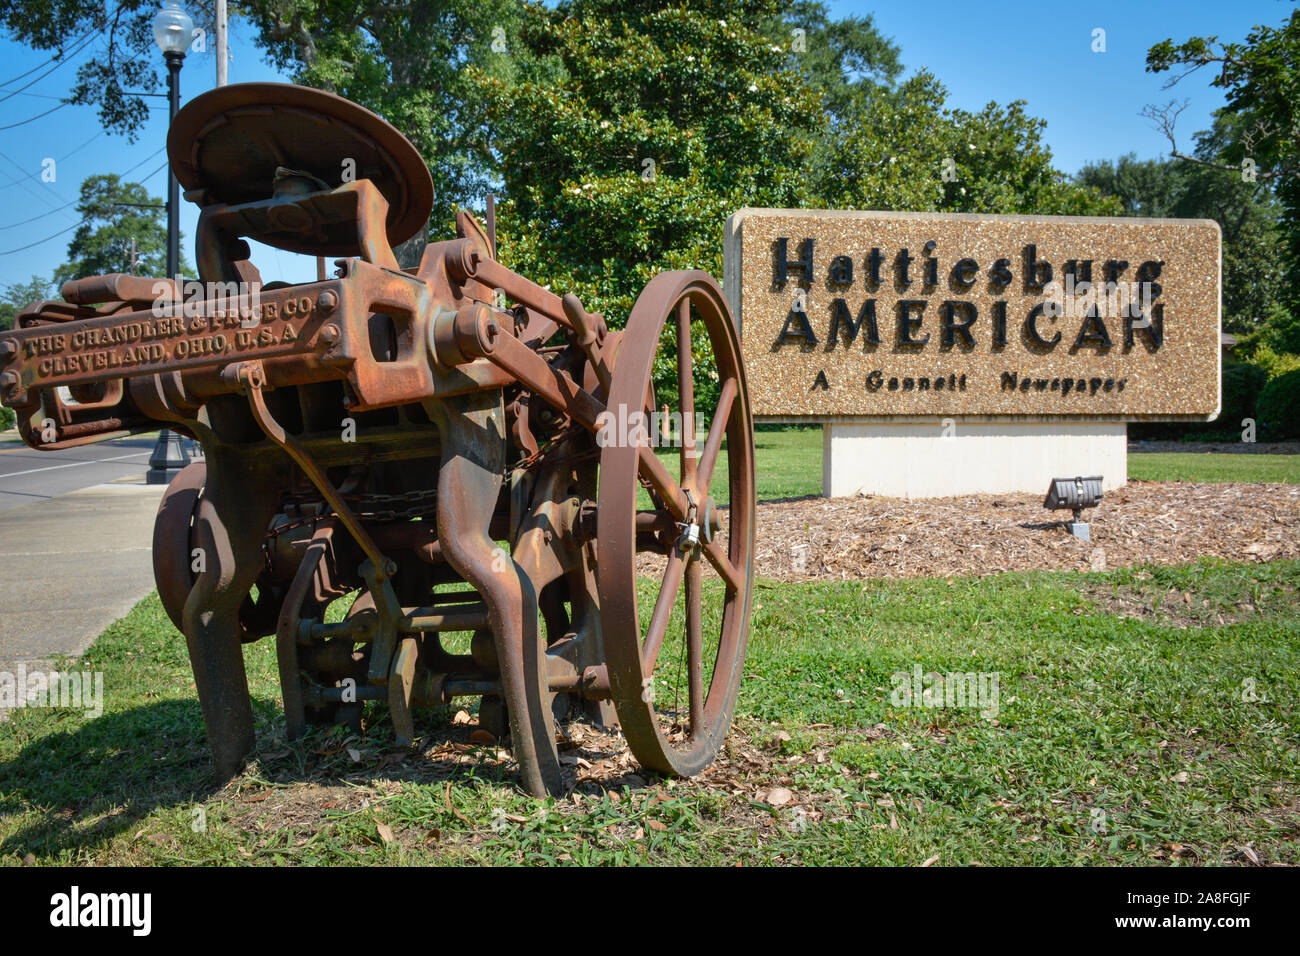 Un signe pour l'Hattiesburg American, un journal de Gannett, ainsi qu'une machine d'impression antique, rouillée s'affichent à Hattiesburg, MS, ETATS UNIS Banque D'Images